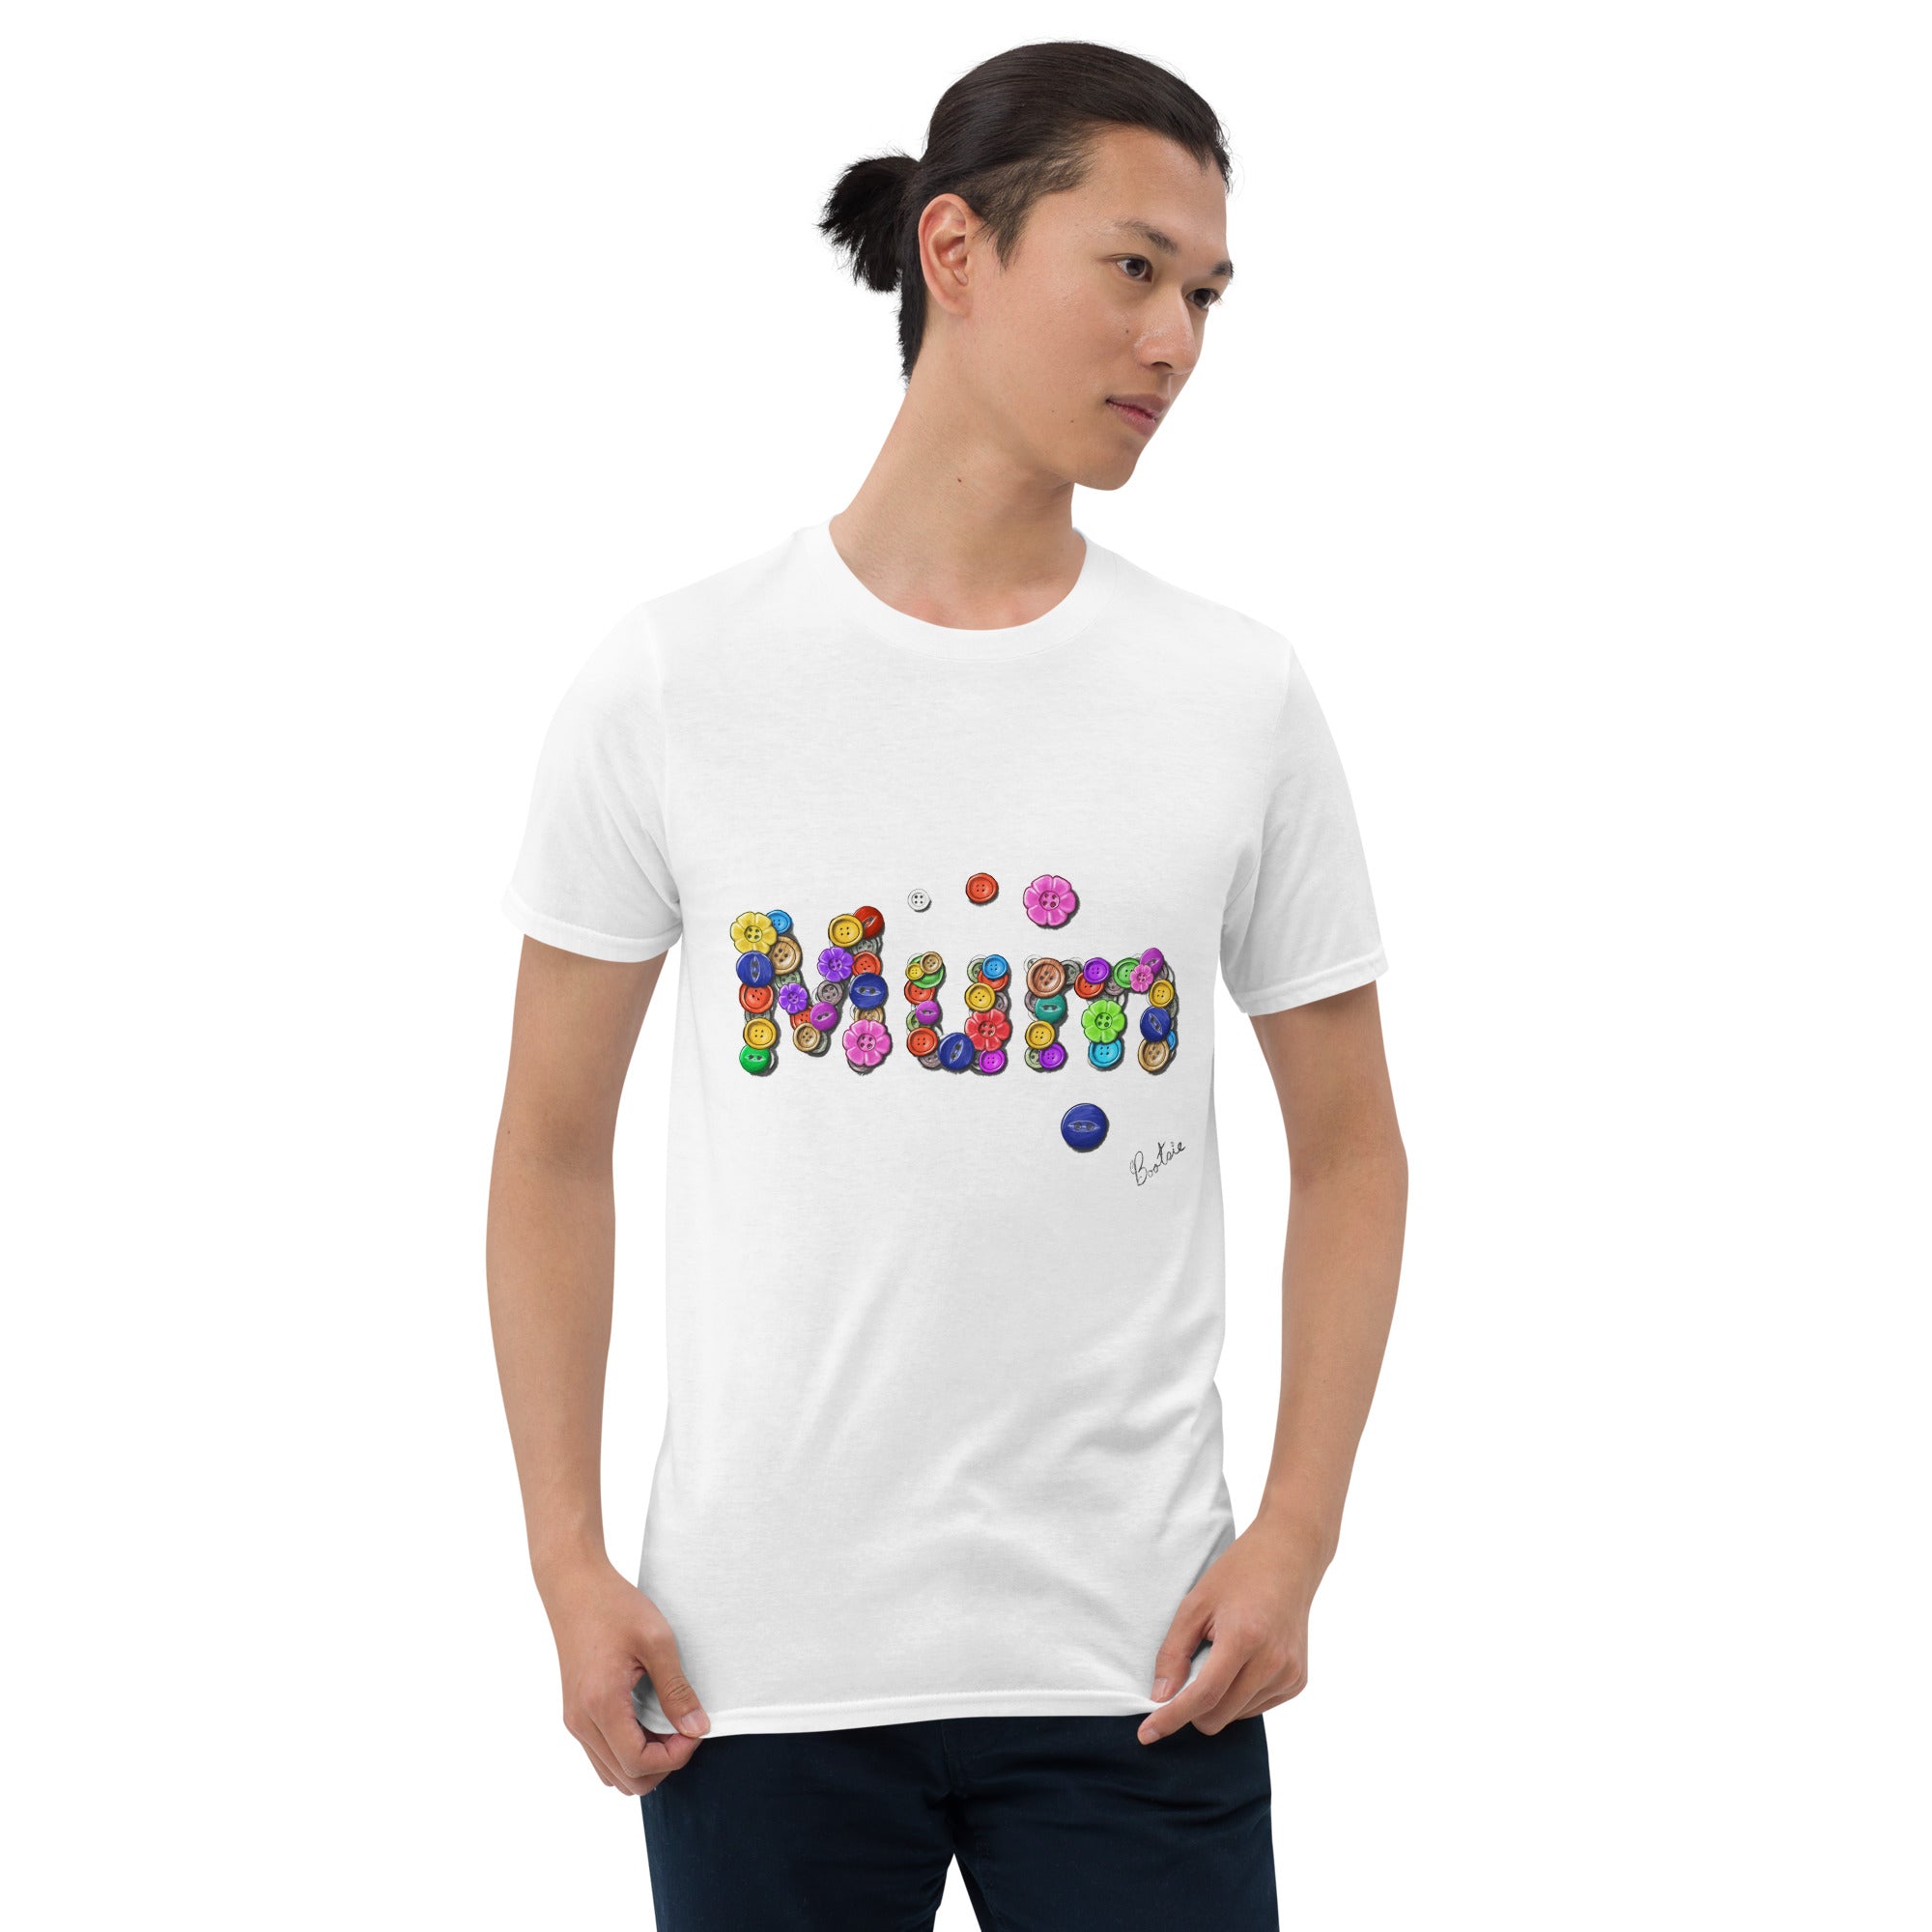 Mum, Buttons, Short-Sleeve Unisex T-Shirt